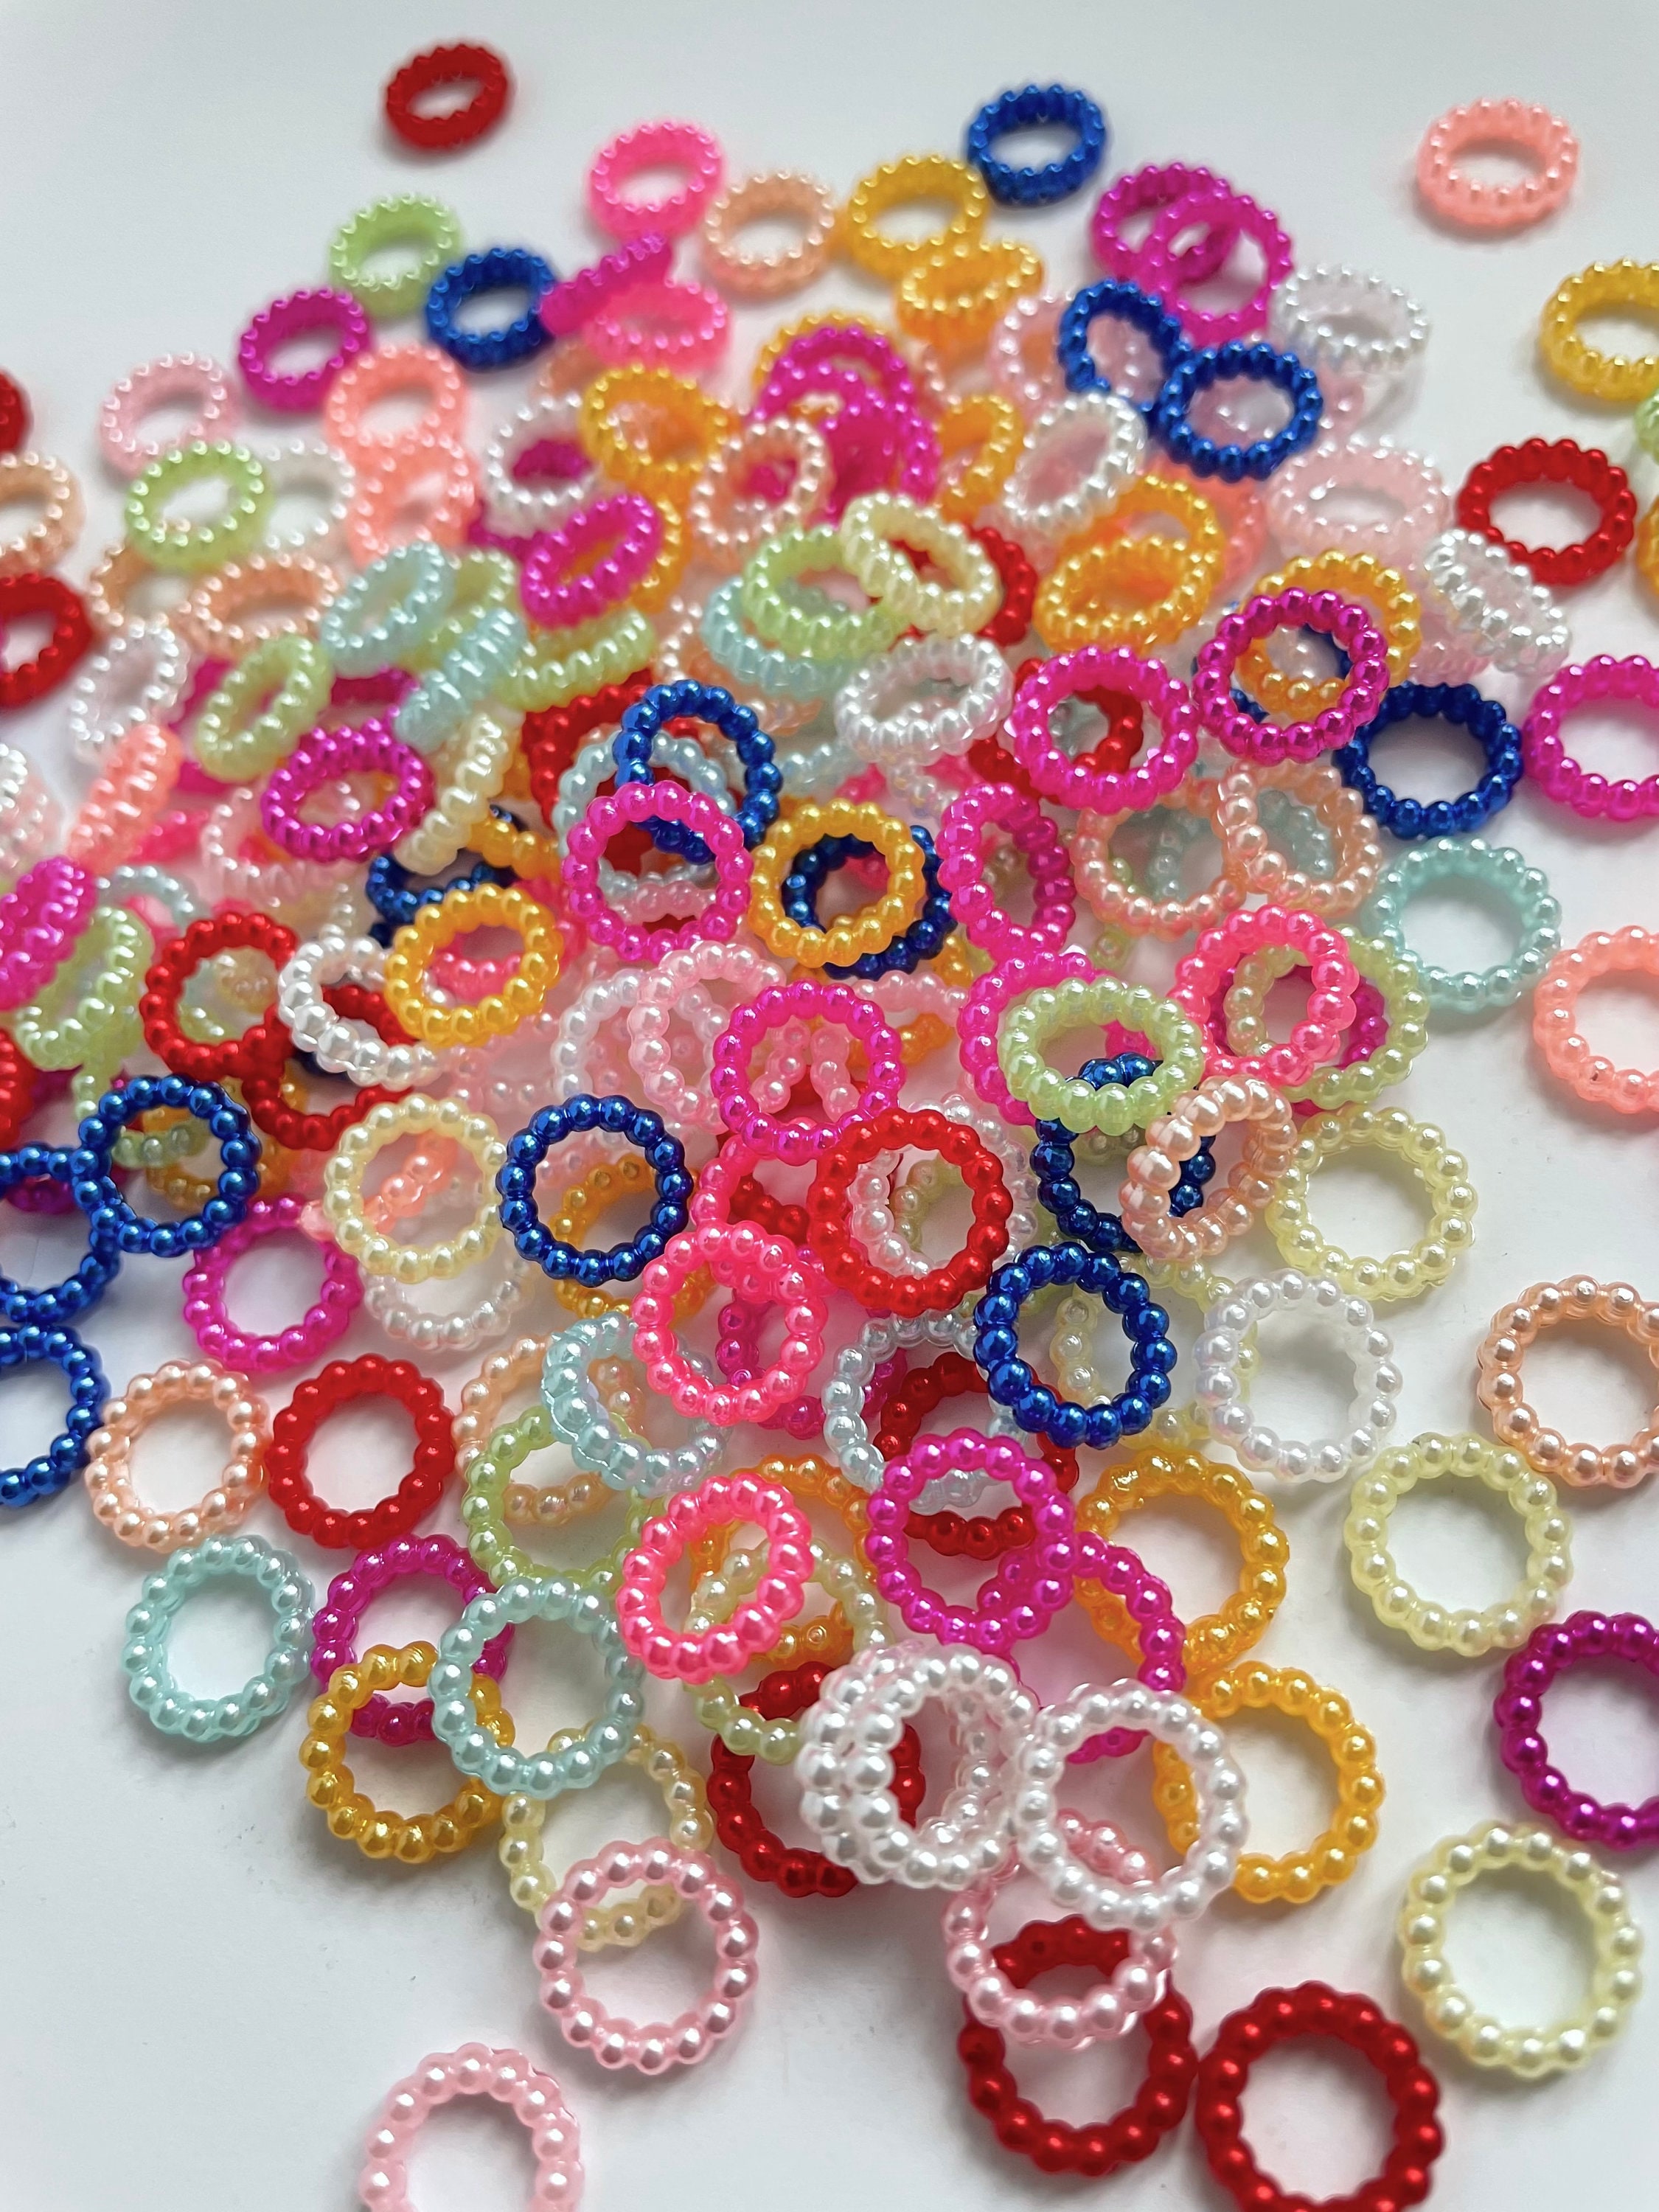 Yizzvb 50 Pcs Crochet Stitch Markers, Knitting Rings with 50pcs